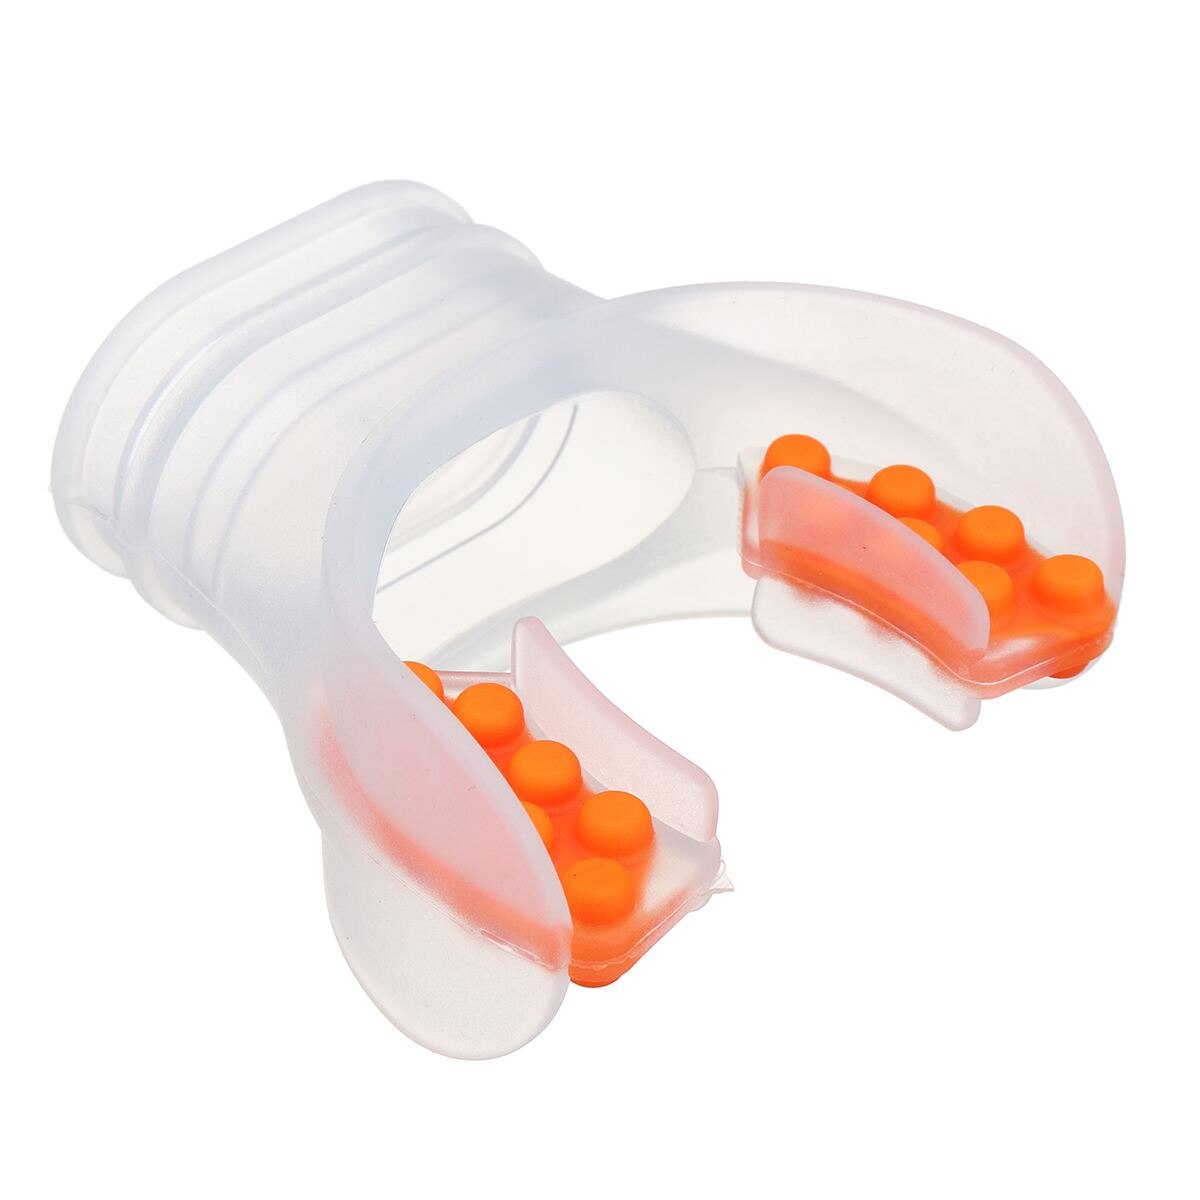 Dykning scuba snorkel mundstykke silikone dykkerudstyr undervands åndedræt mundstykke regulator udskiftning: Gennemsigtig orange